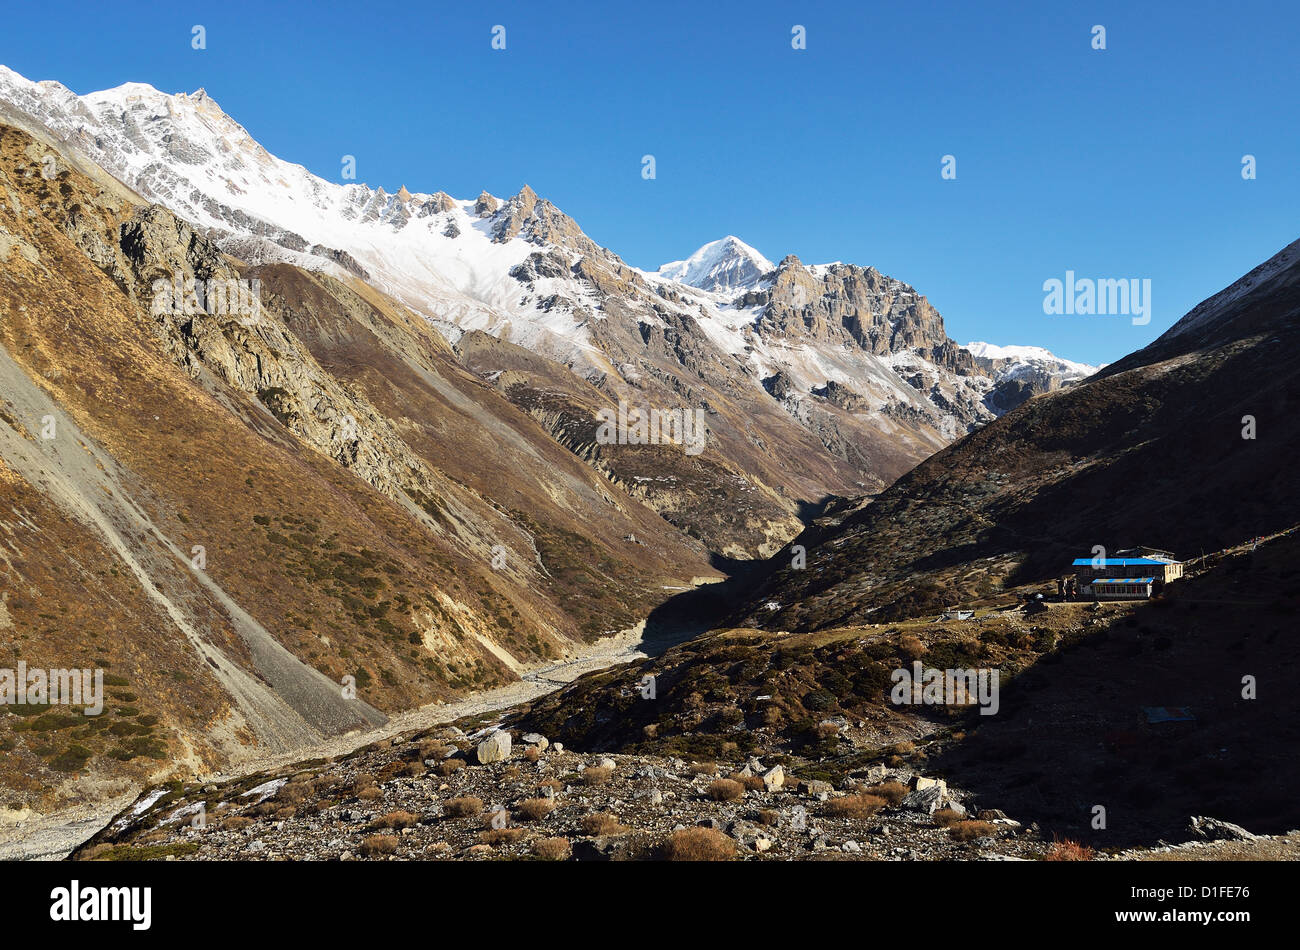 Thorung Khola Valley, de l'Annapurna Conservation Area, Gandaki, Région de l'Ouest (Pashchimanchal), Népal, Himalaya, Asie Banque D'Images